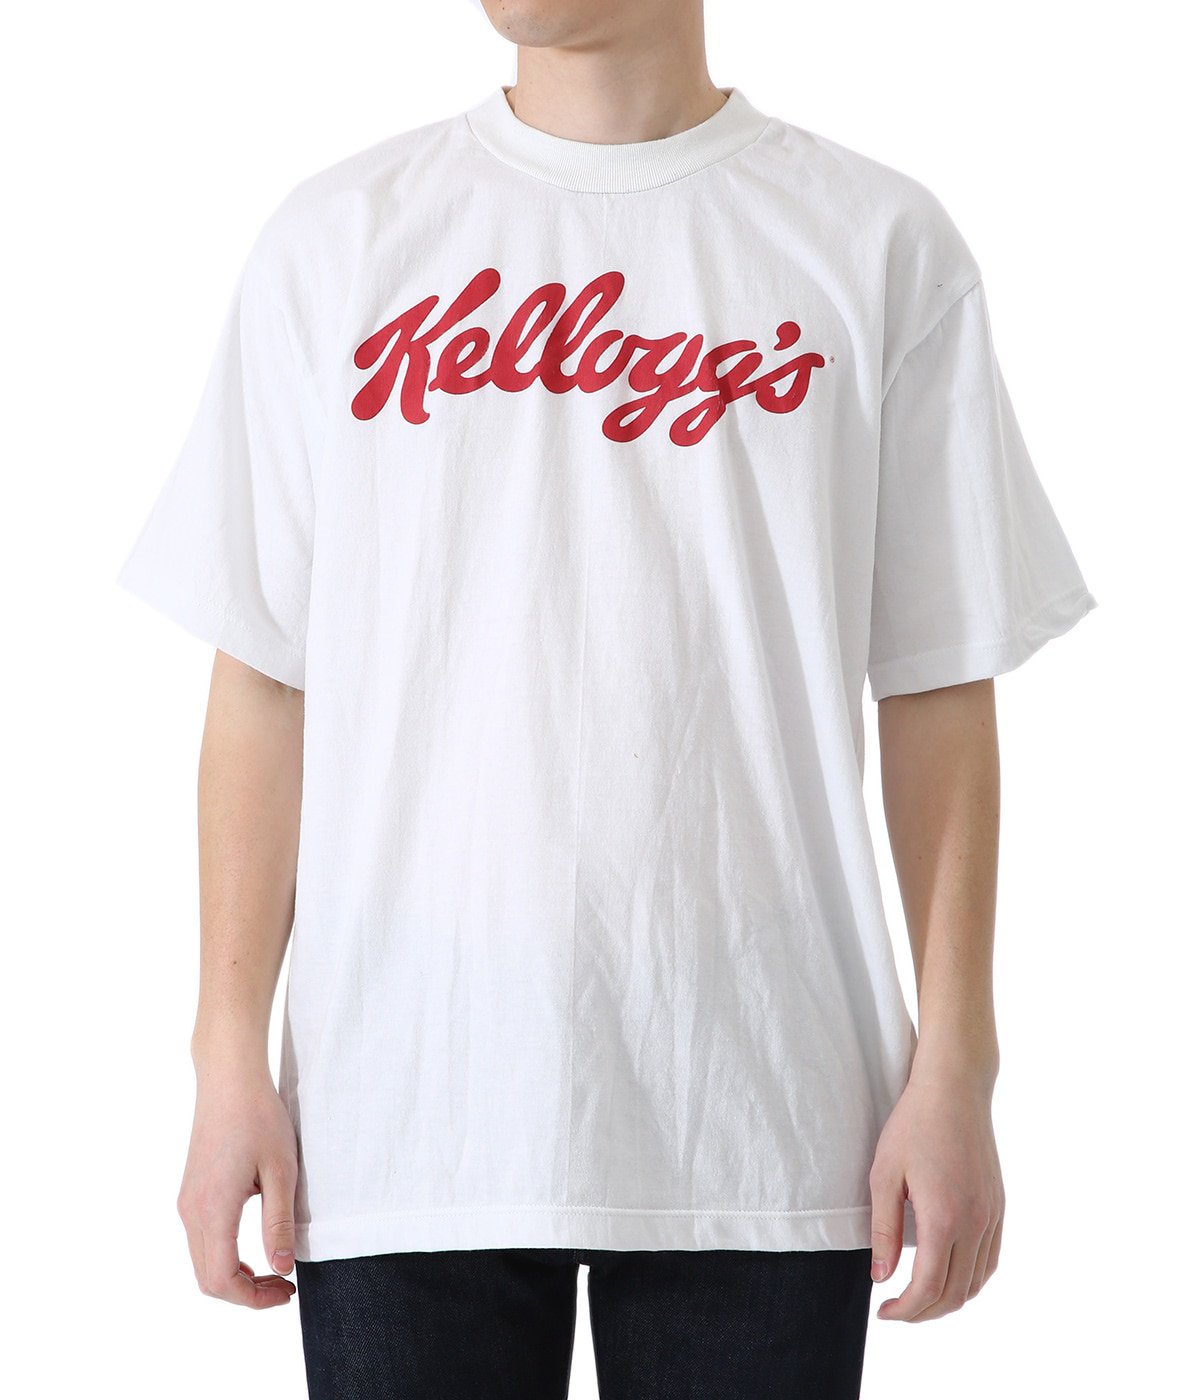 Kellogg’s Logo Tee